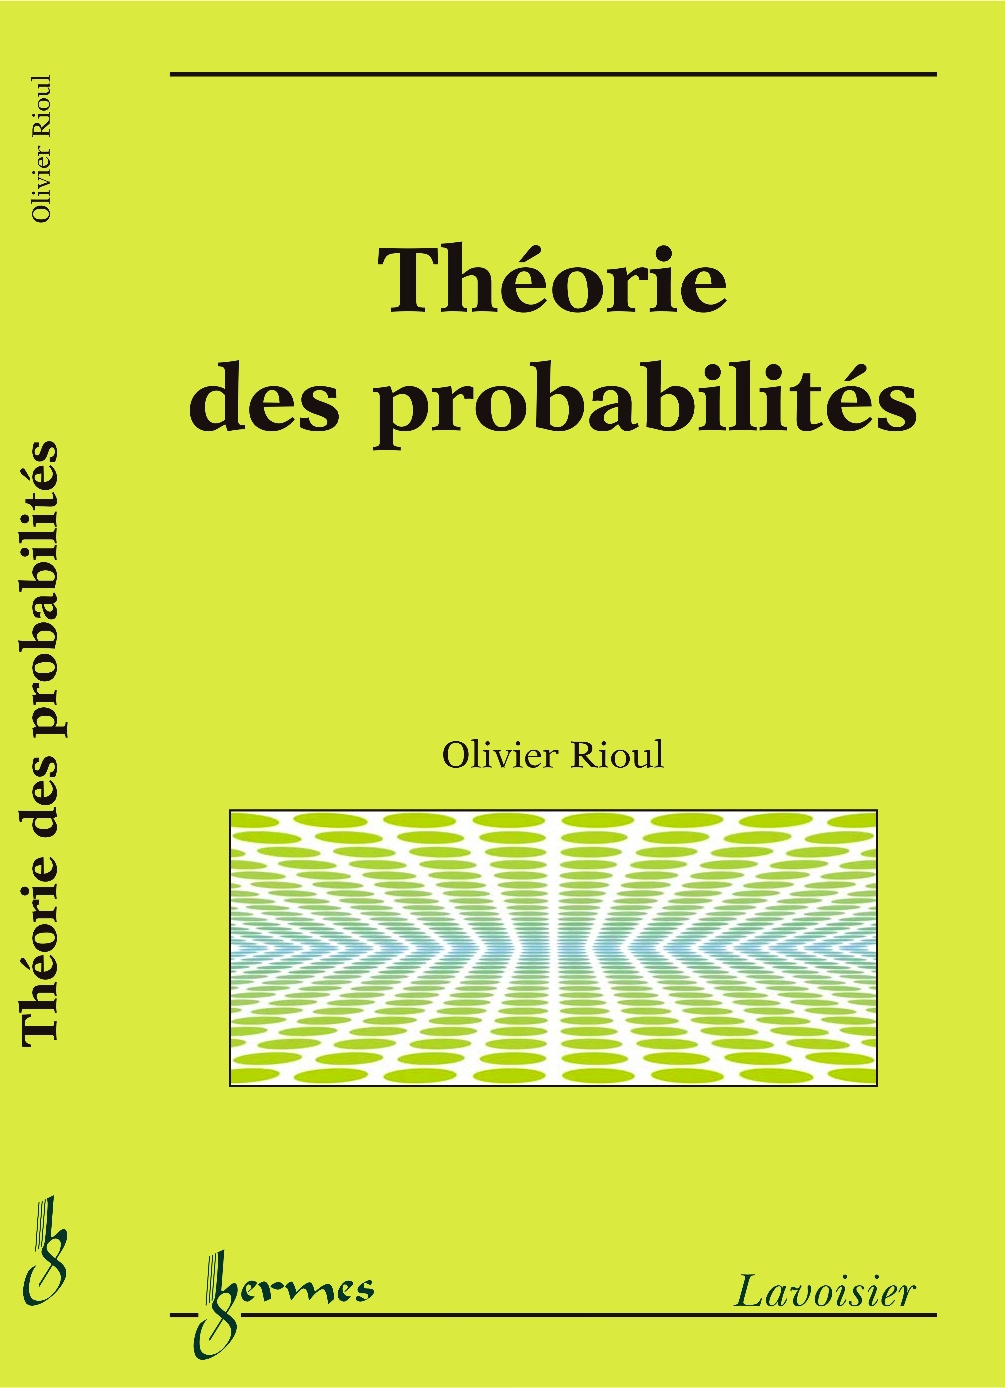 couverture livre theorie probabilites